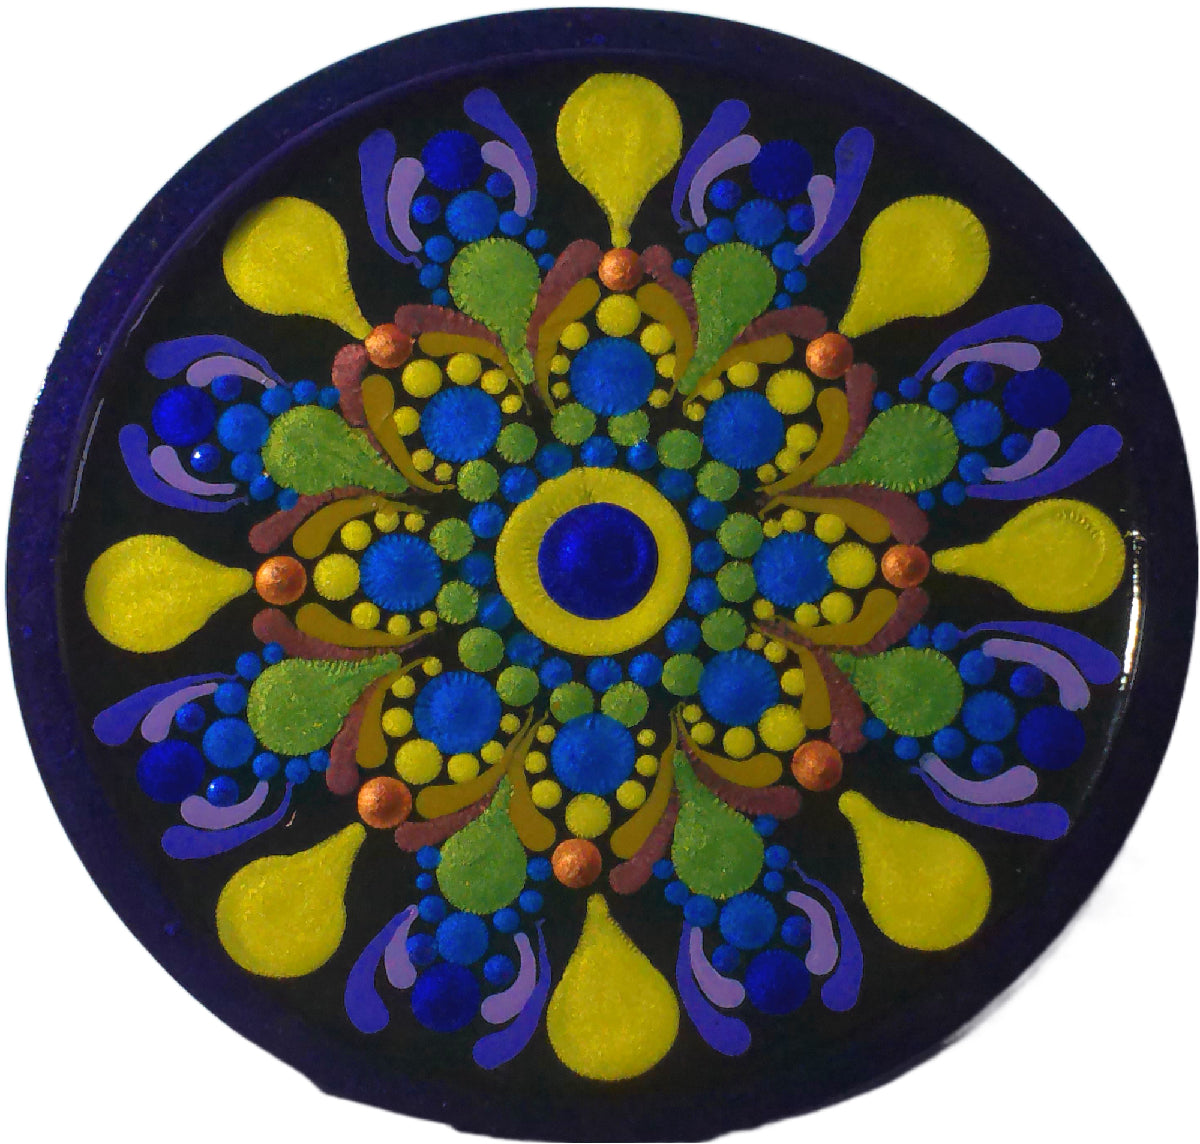 Radiant Mandala Charging Plate #3 with orgone energy shungite activation